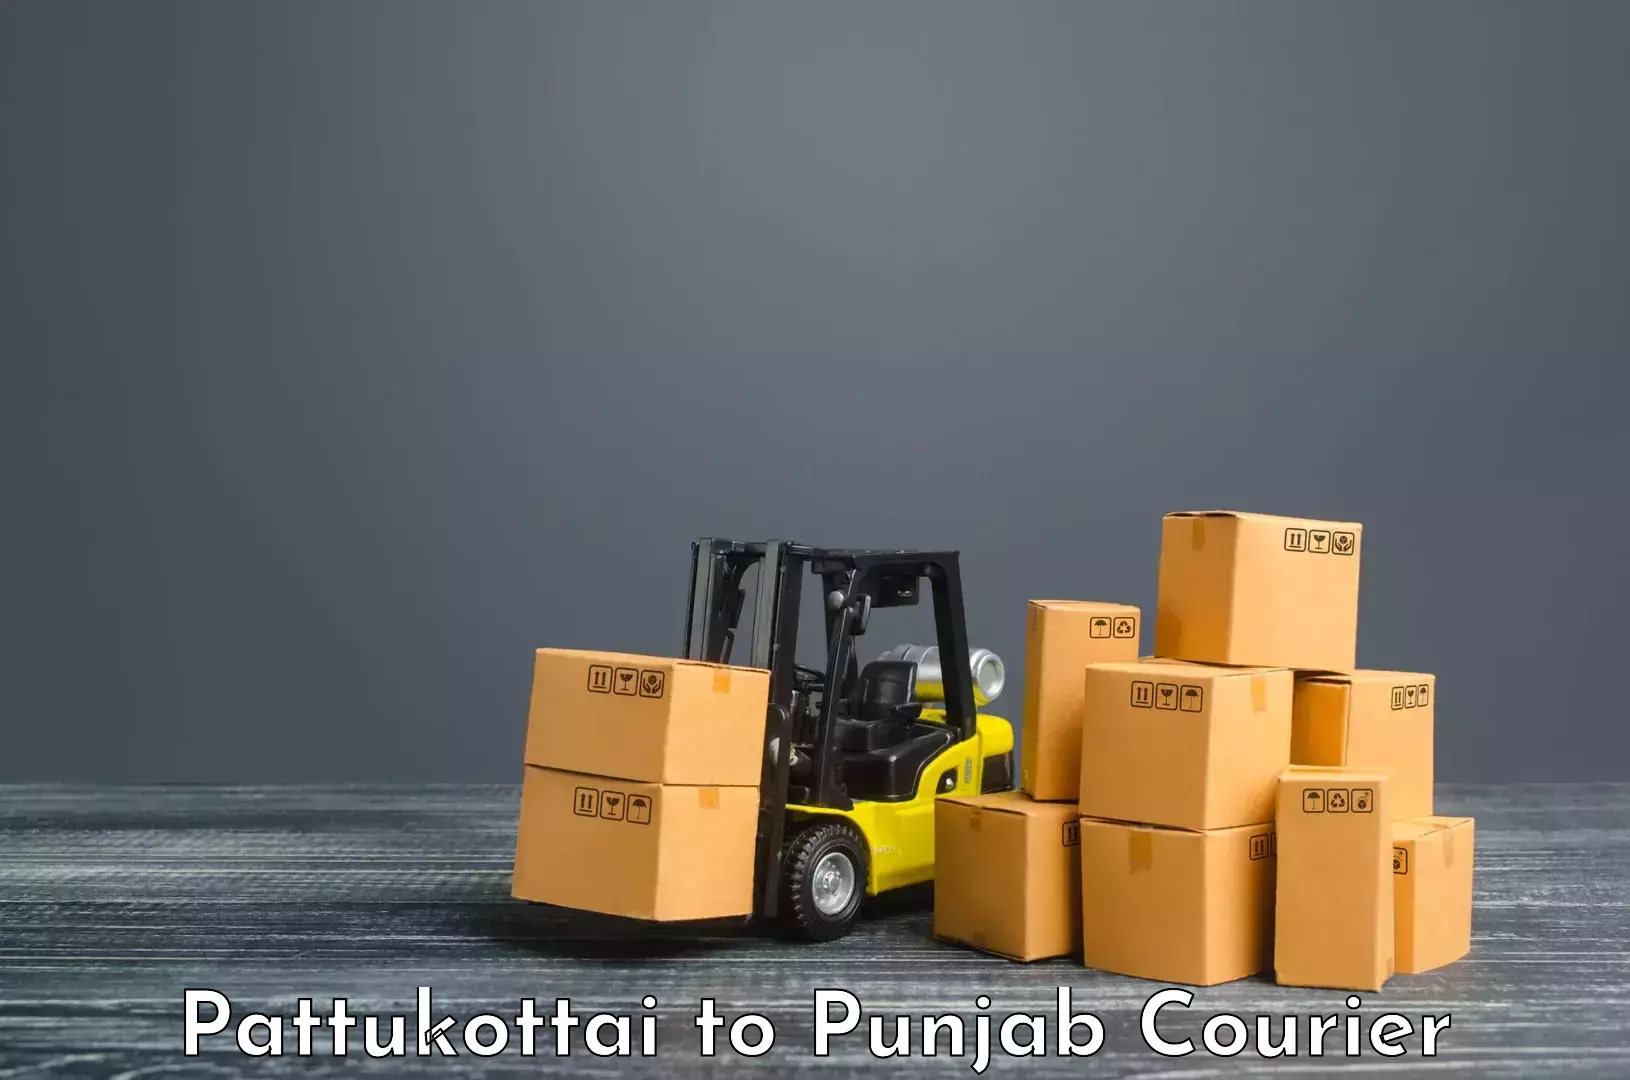 Advanced freight services Pattukottai to Raikot